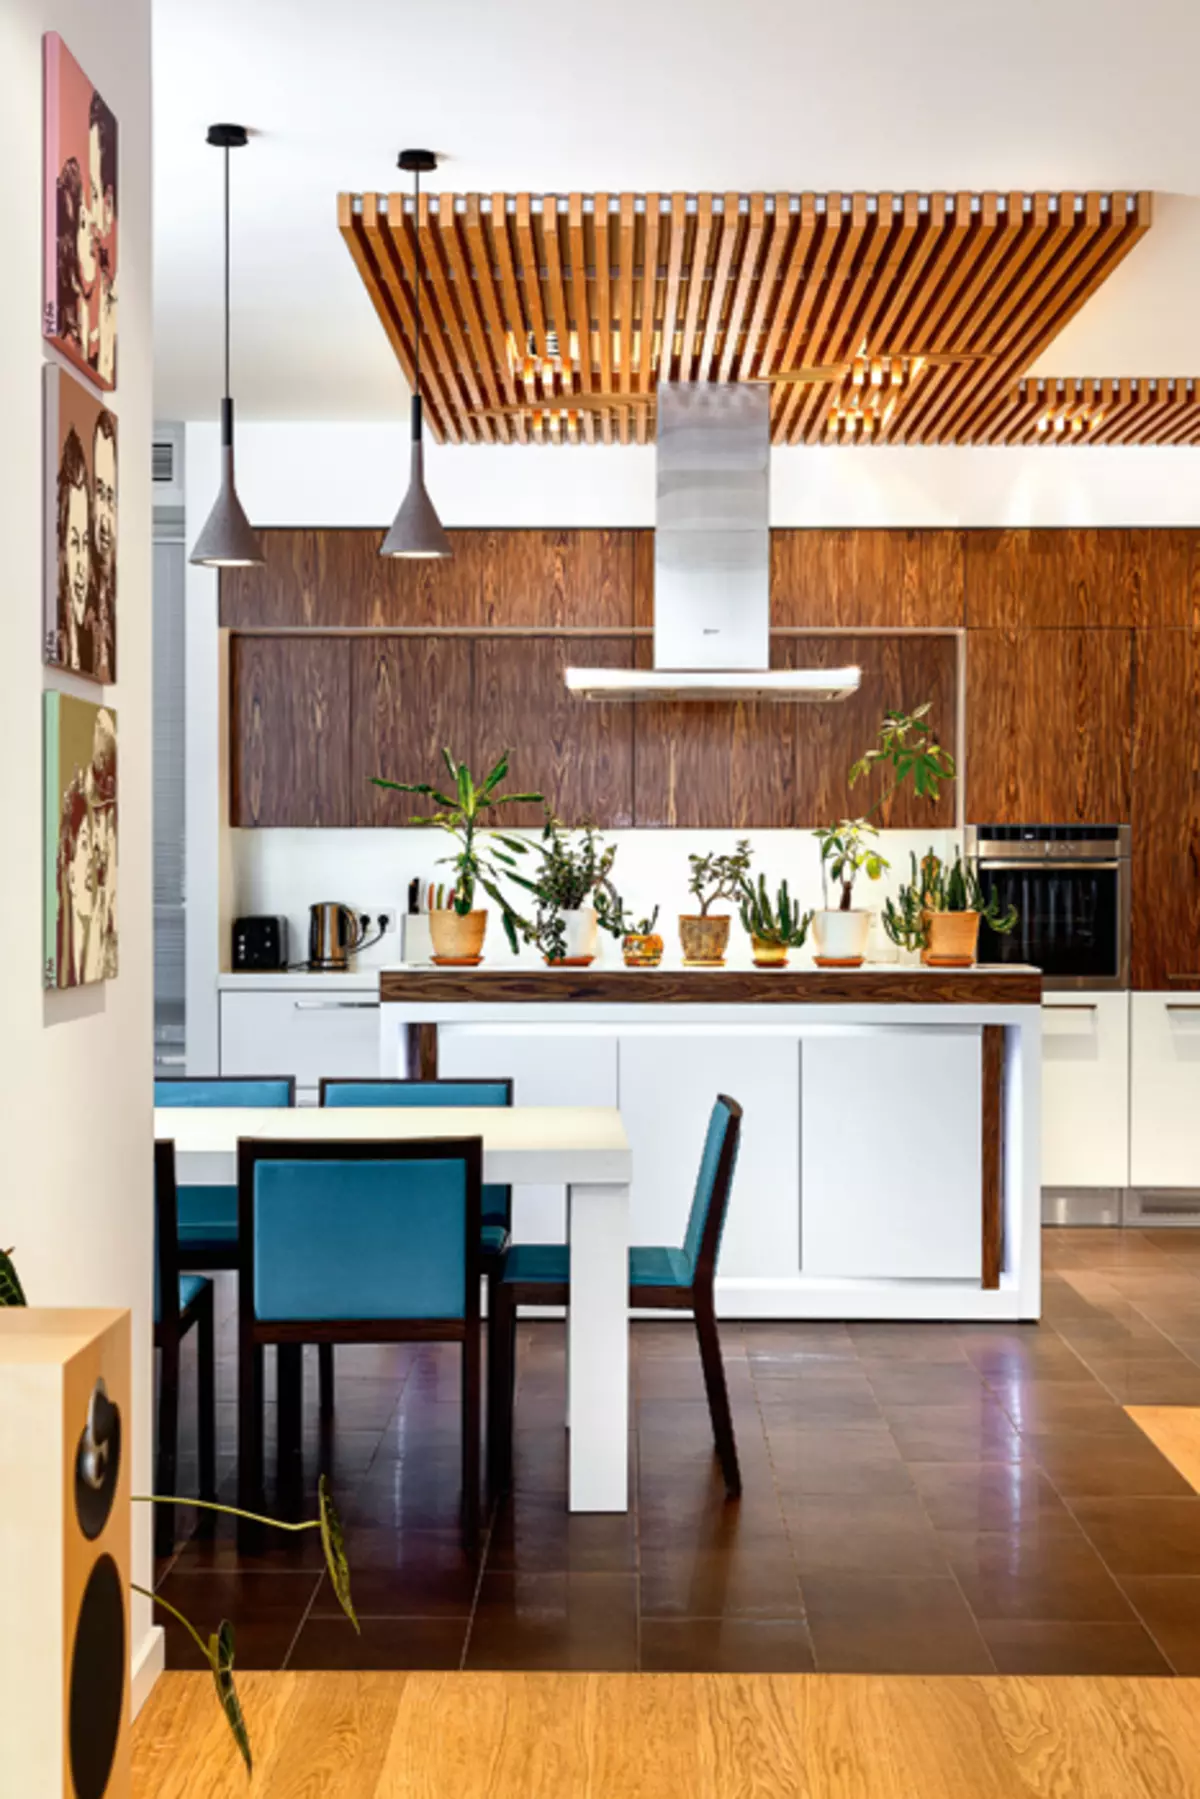 Elementos de estilo ecológico en diferentes instalaciones del apartamento: 20 ideas (foto)